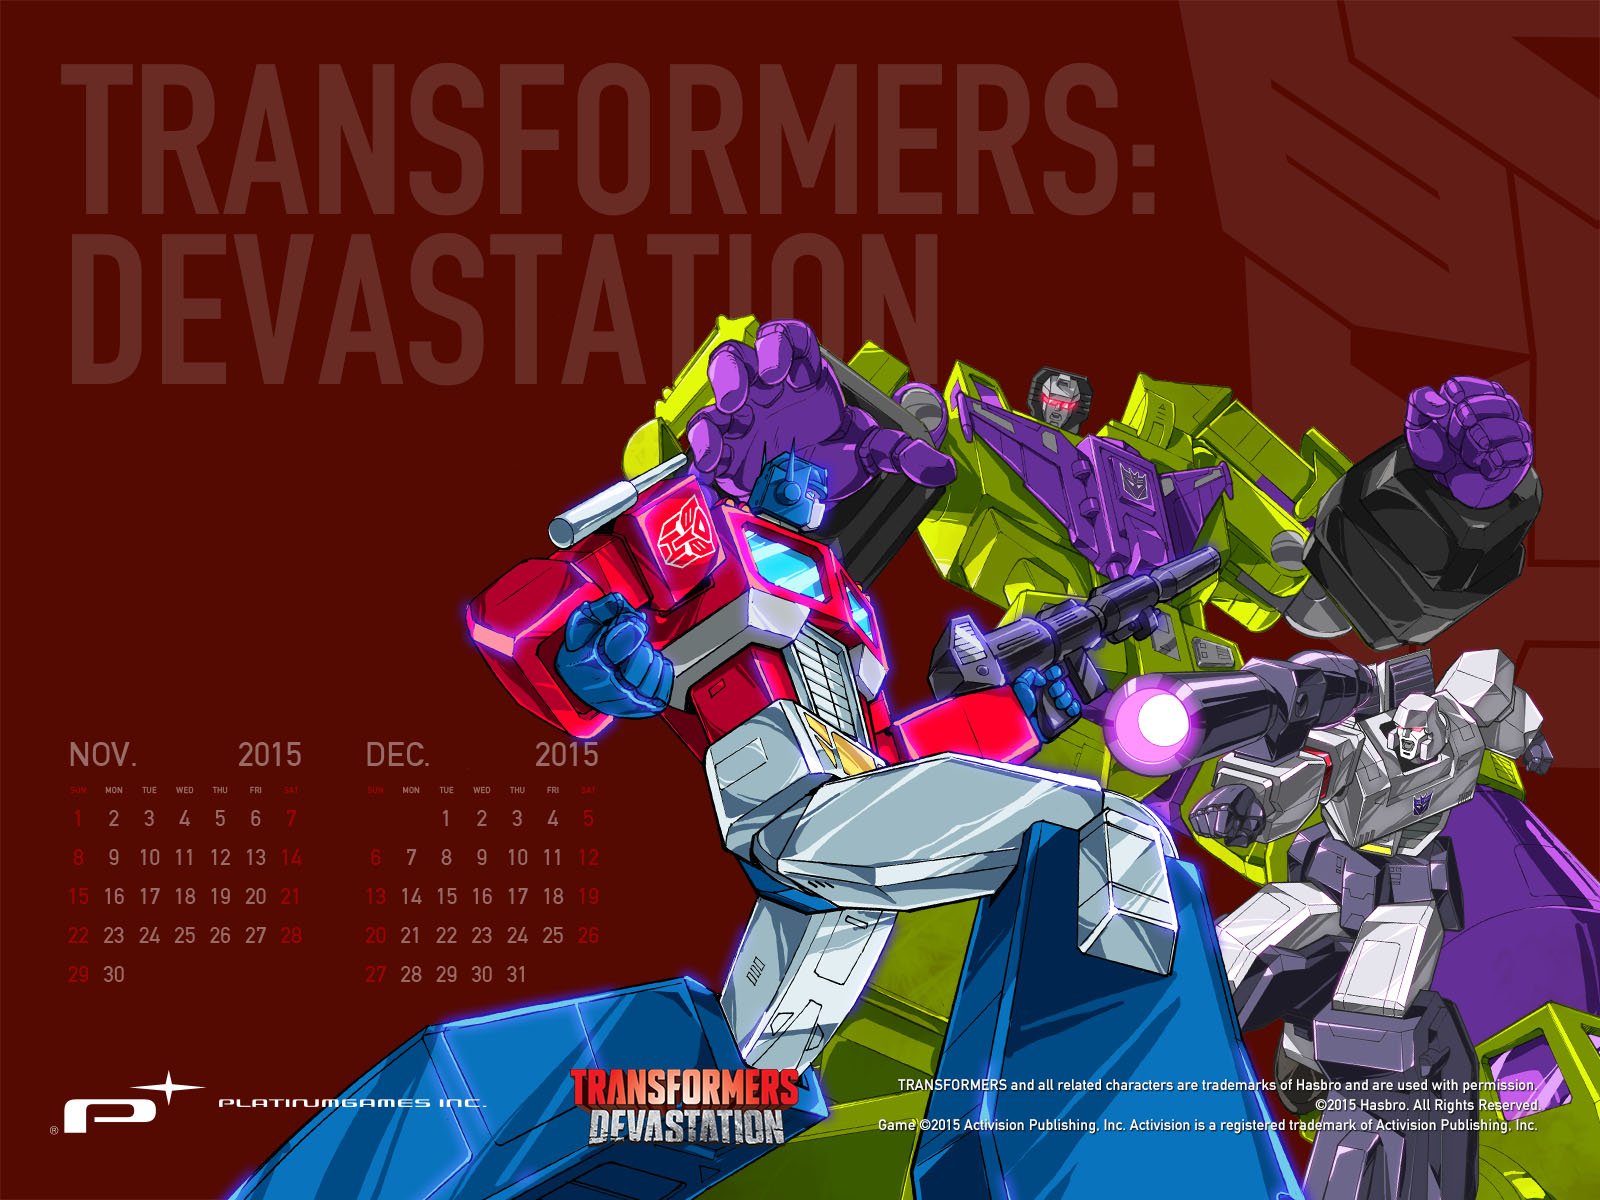 PlatinumGames Inc.'ve put up wallpaper for Transformers: Devastation on our FB! #TransformersDevastation